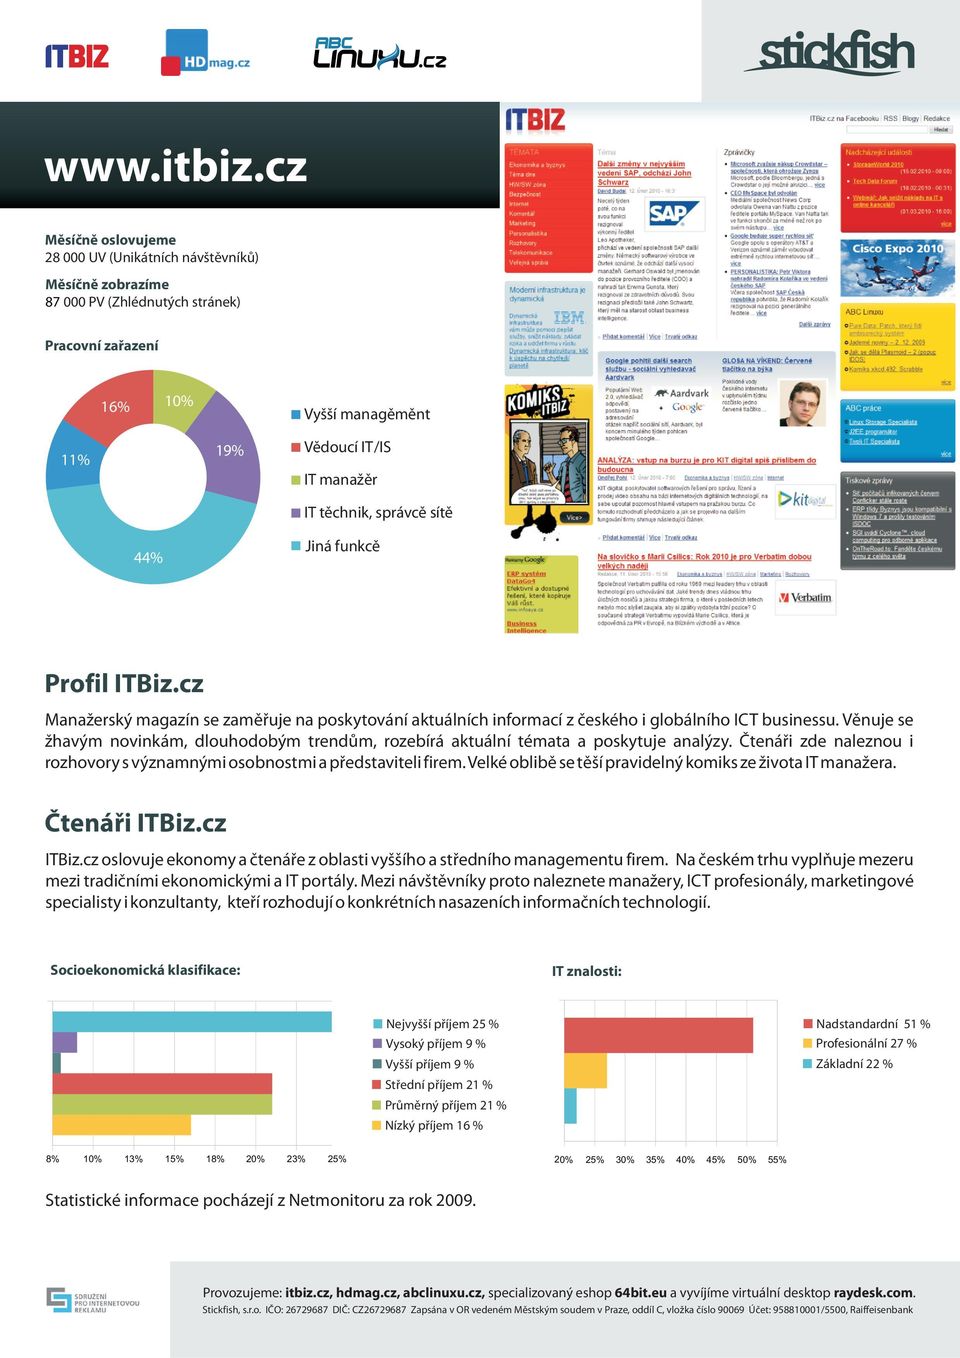 správce síte Jiná funkce 44% Profil ITBiz.cz Manažerský magazín se zamìøuje na poskytování aktuálních informací z èeského i globálního ICT businessu.